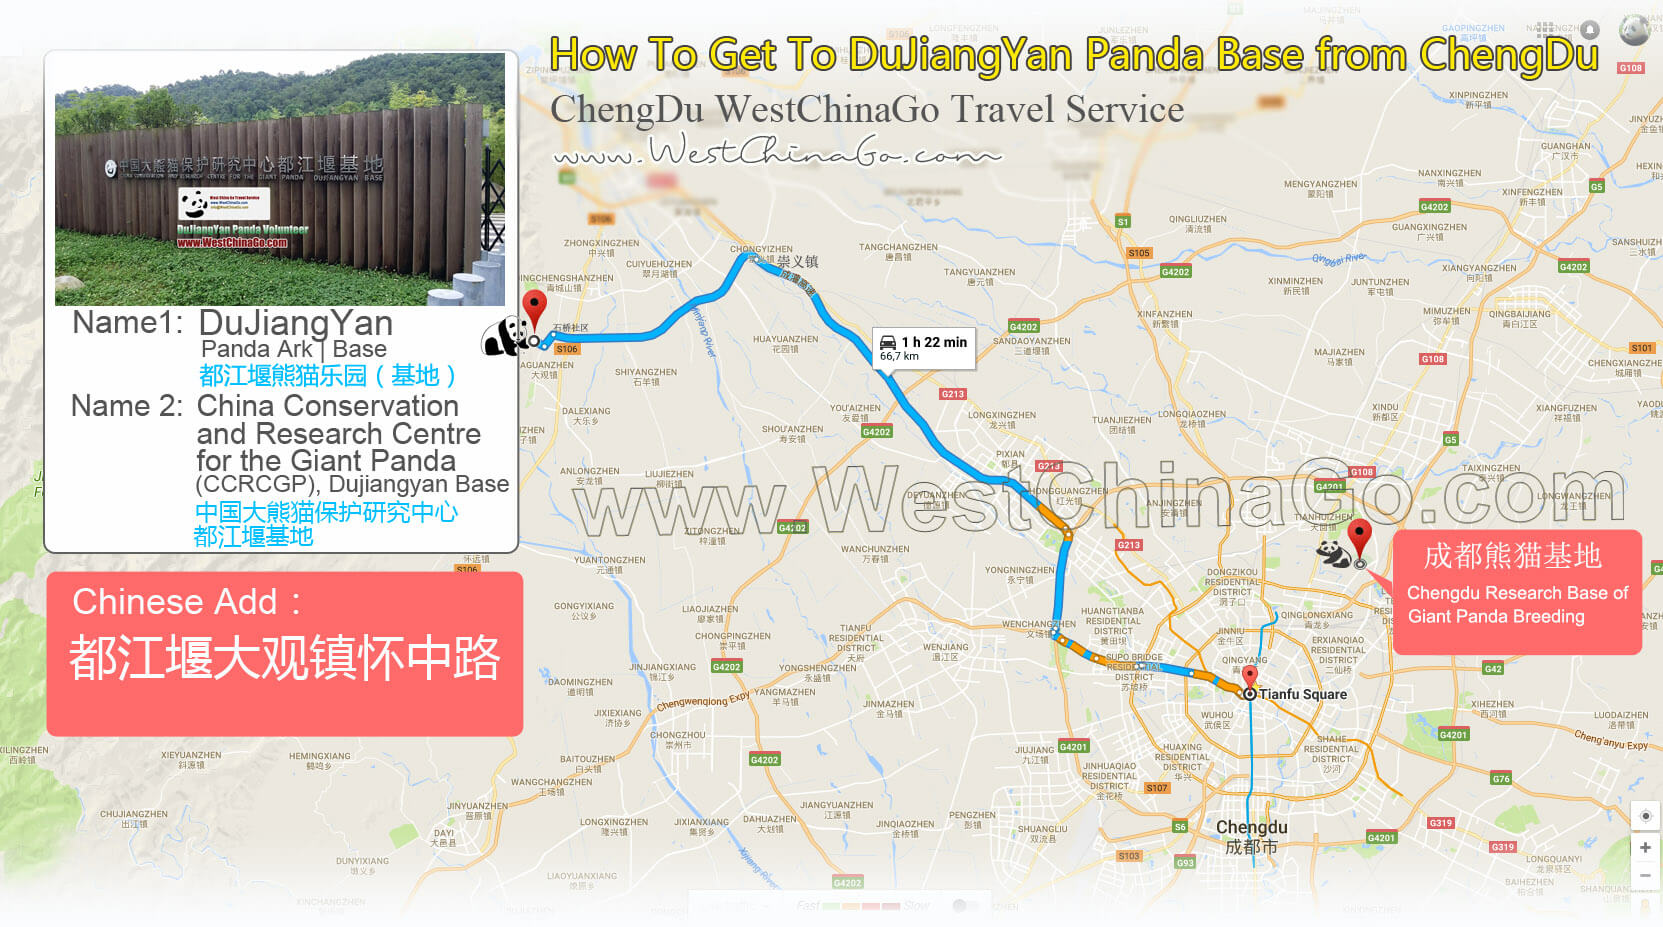 How to get to dujiangyan panda base from chengdu